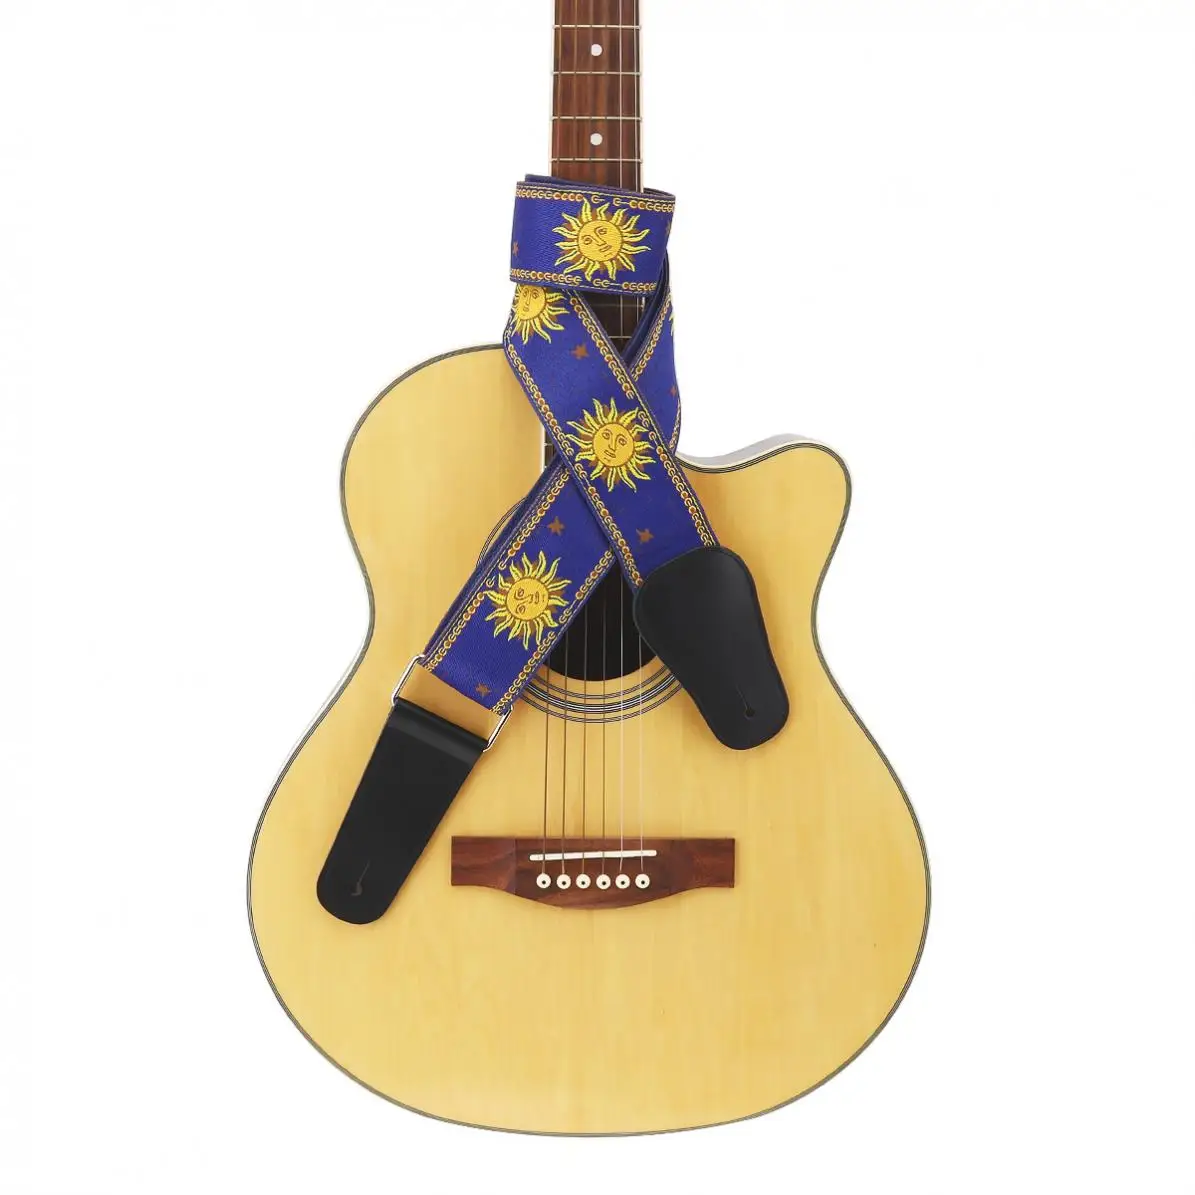 Ayarlanabilir 110-168cm uzunluk Gitar Askısı Çift Kumaş Güneş Çiçek Desen Hakiki deri kemer Gitarist Enstrüman Parçaları Görüntü  2